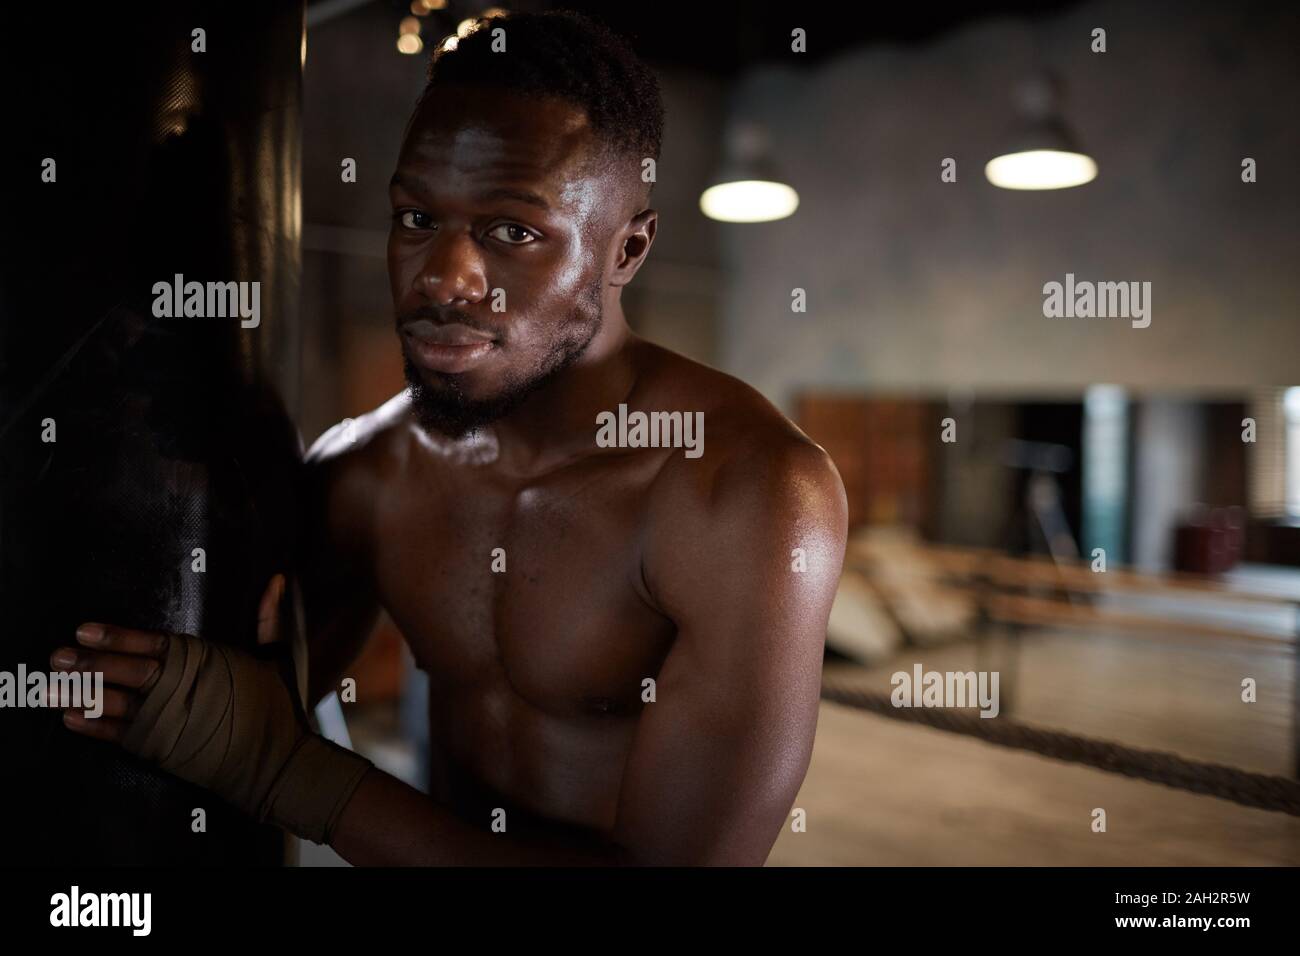 Portrait de l'homme torse nu, debout près de l'entraînement de sac de boxe et looking at camera in gym Banque D'Images